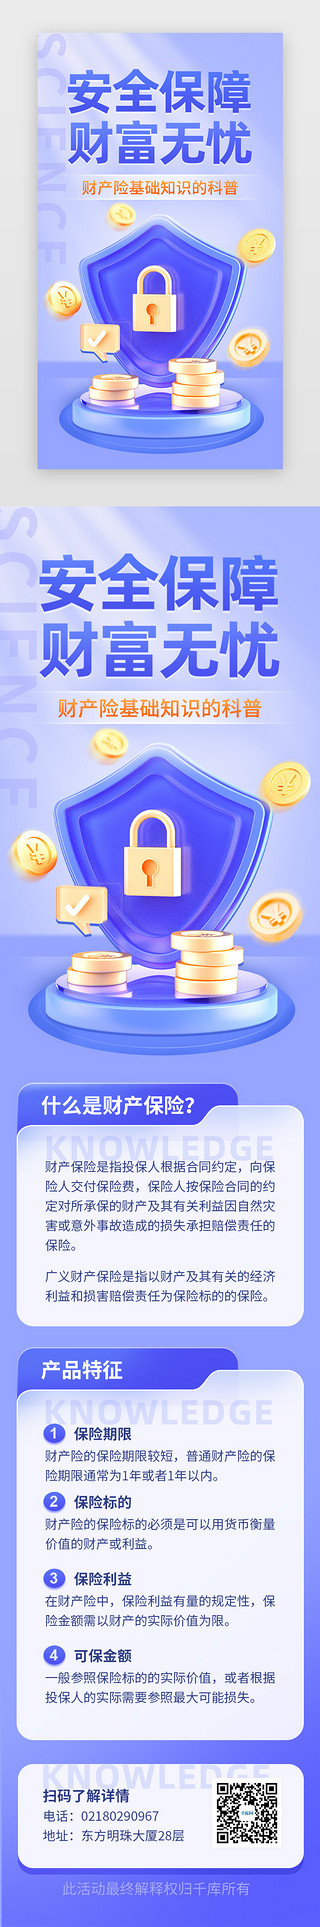 质量盾牌UI设计素材_财产保险知识科普app主界面立体蓝紫盾牌